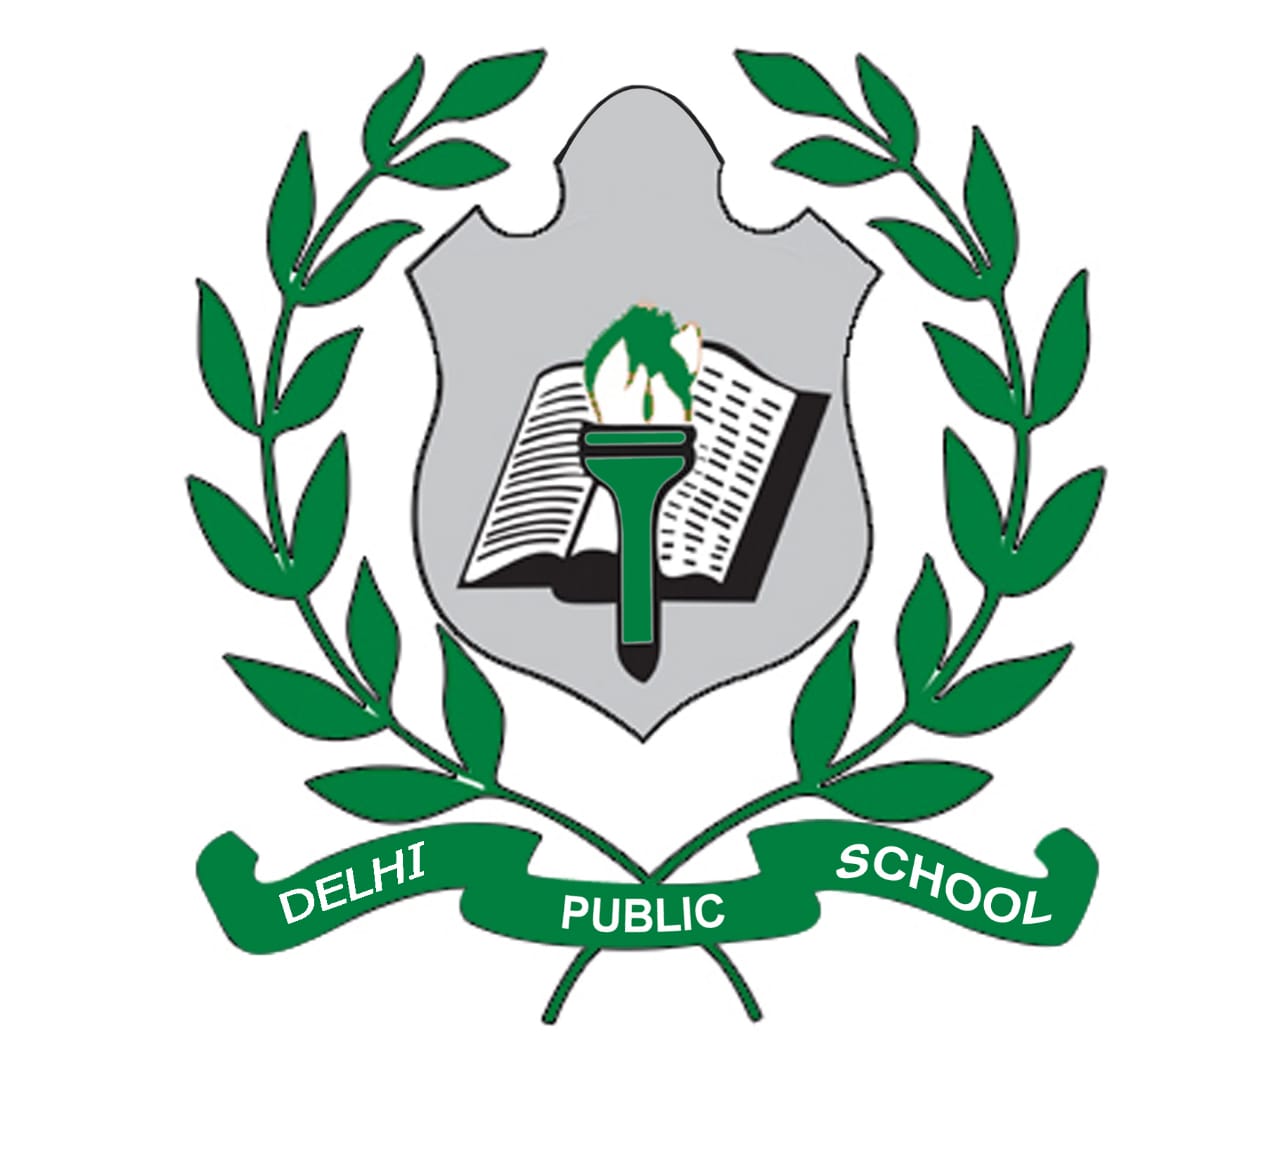 Delhi Public Schools in Sehamalpur,Varanasi - Best CBSE Schools in Varanasi  - Justdial